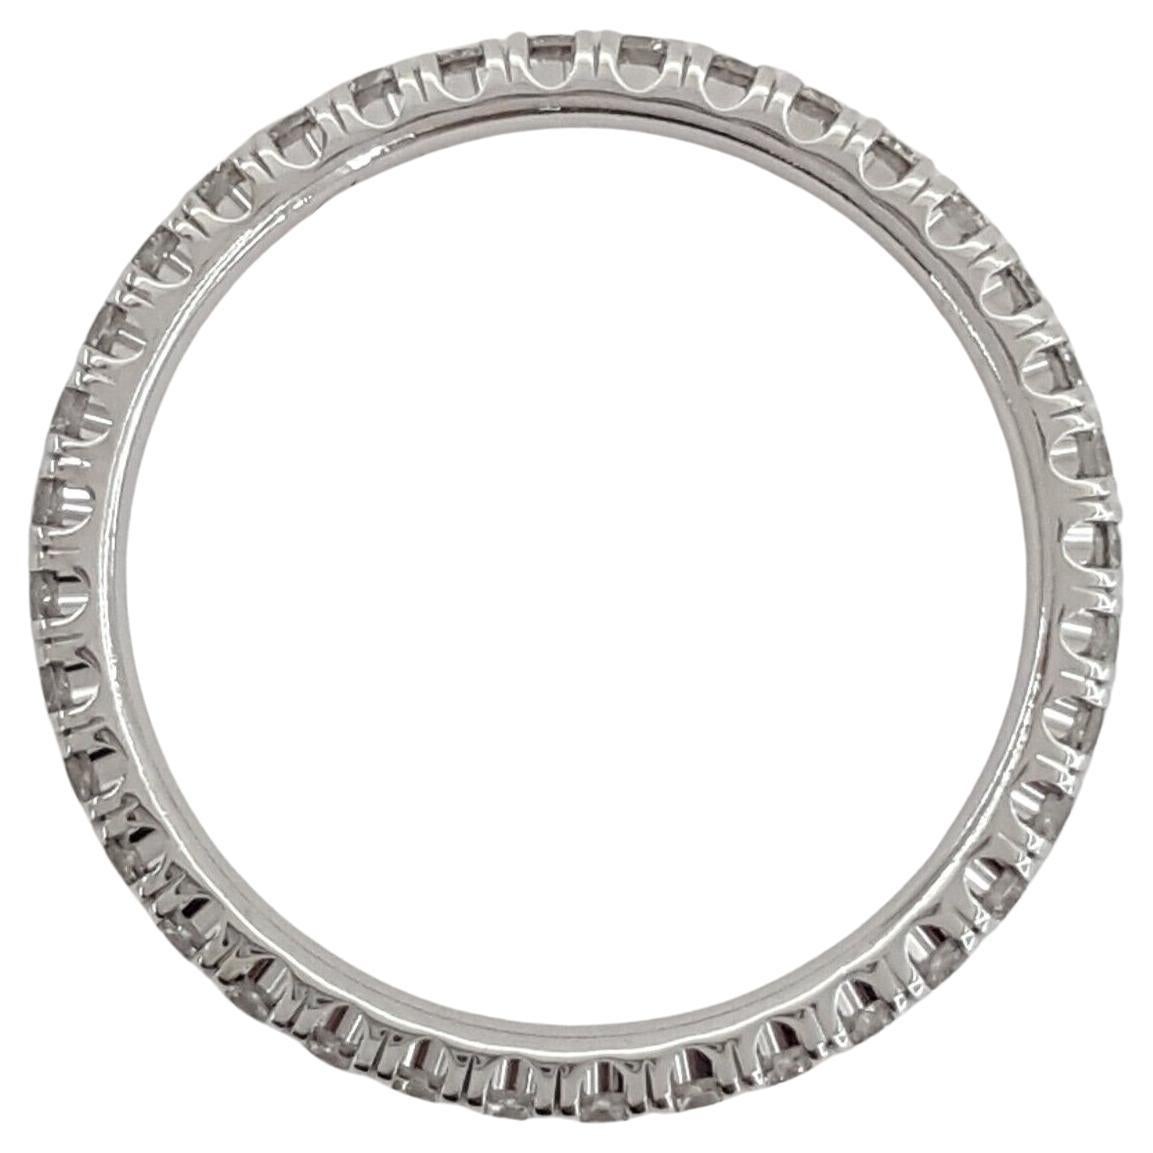 Ein Ewigkeitsring von Cartier mit dem Namen ÉTINCELLE DE Cartier präsentiert einen französischen Pave Set mit runden Diamanten von 0,45 Karat in einem kreisförmigen Design, gefasst in 18 Karat Weißgold. Mit einem Gewicht von 1,7 Gramm und einer